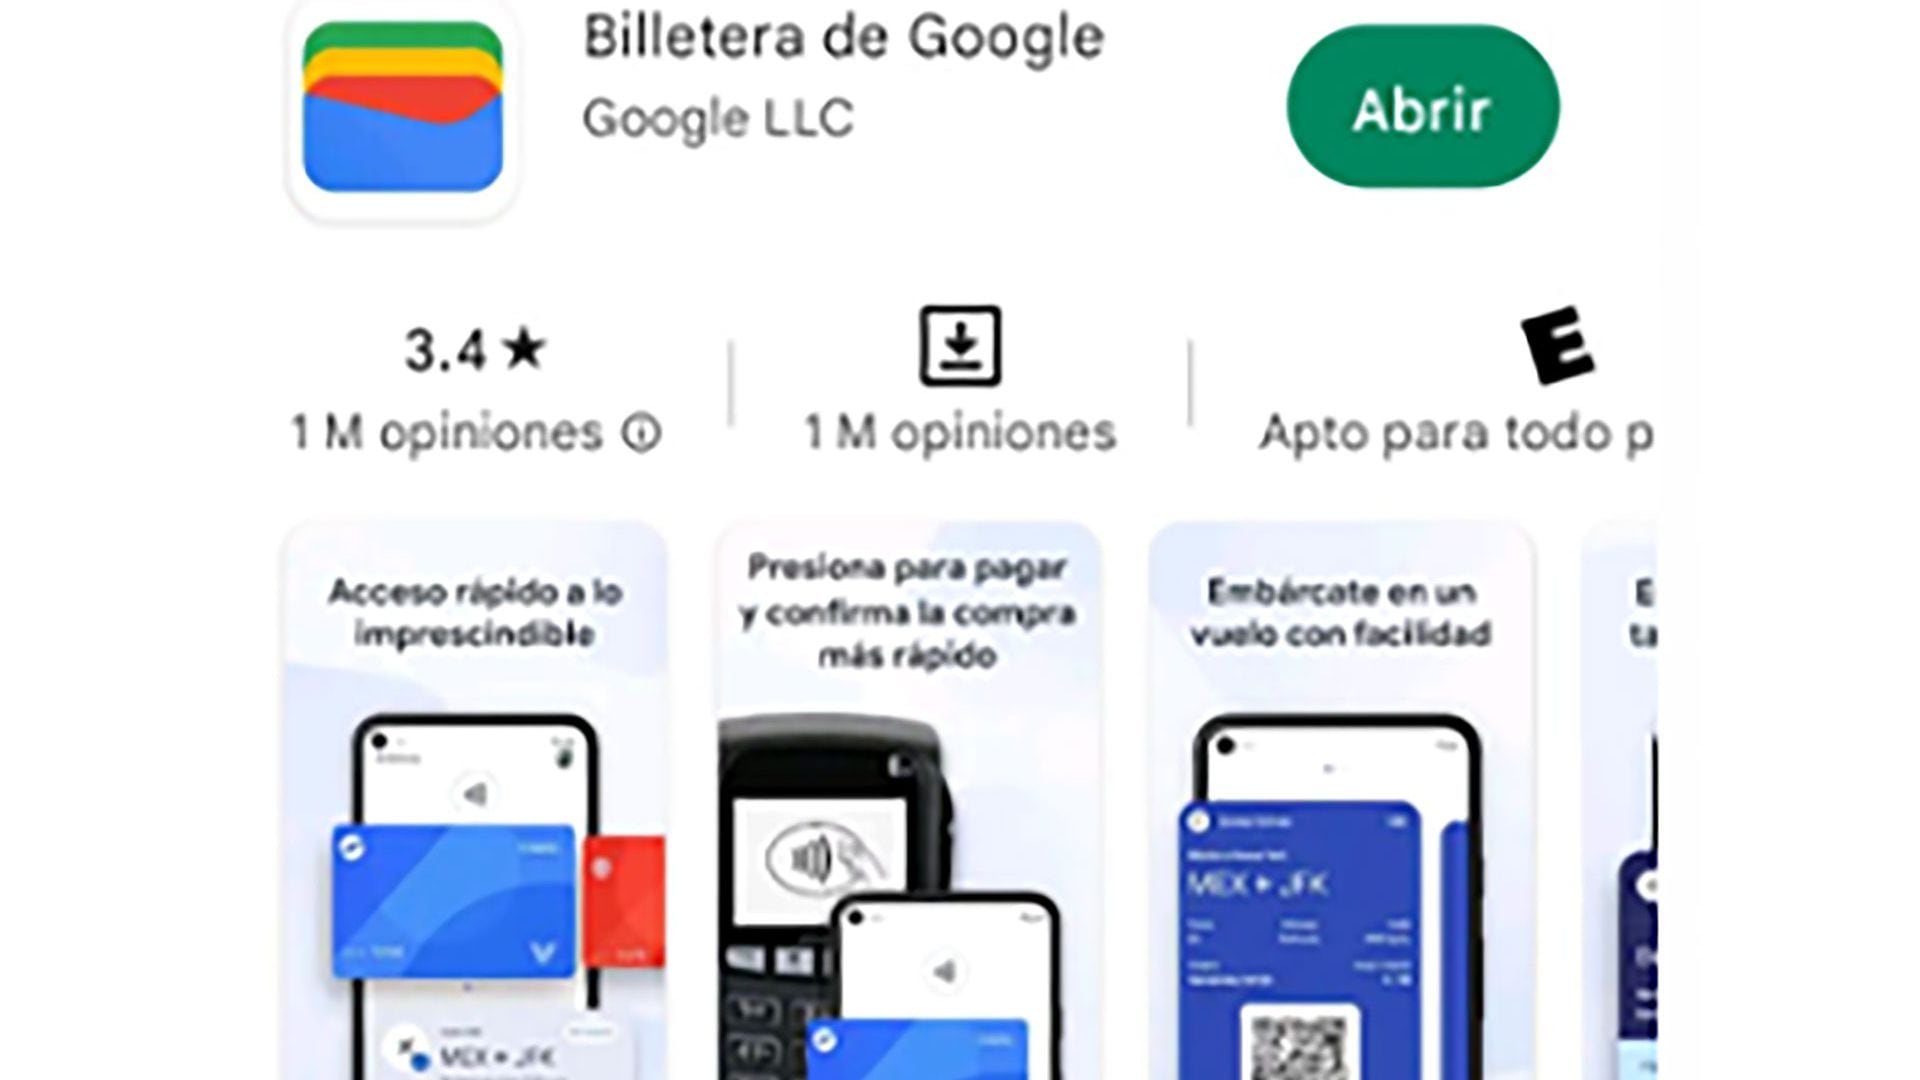 La billetera de Google ya puede descargarse en la Argentina